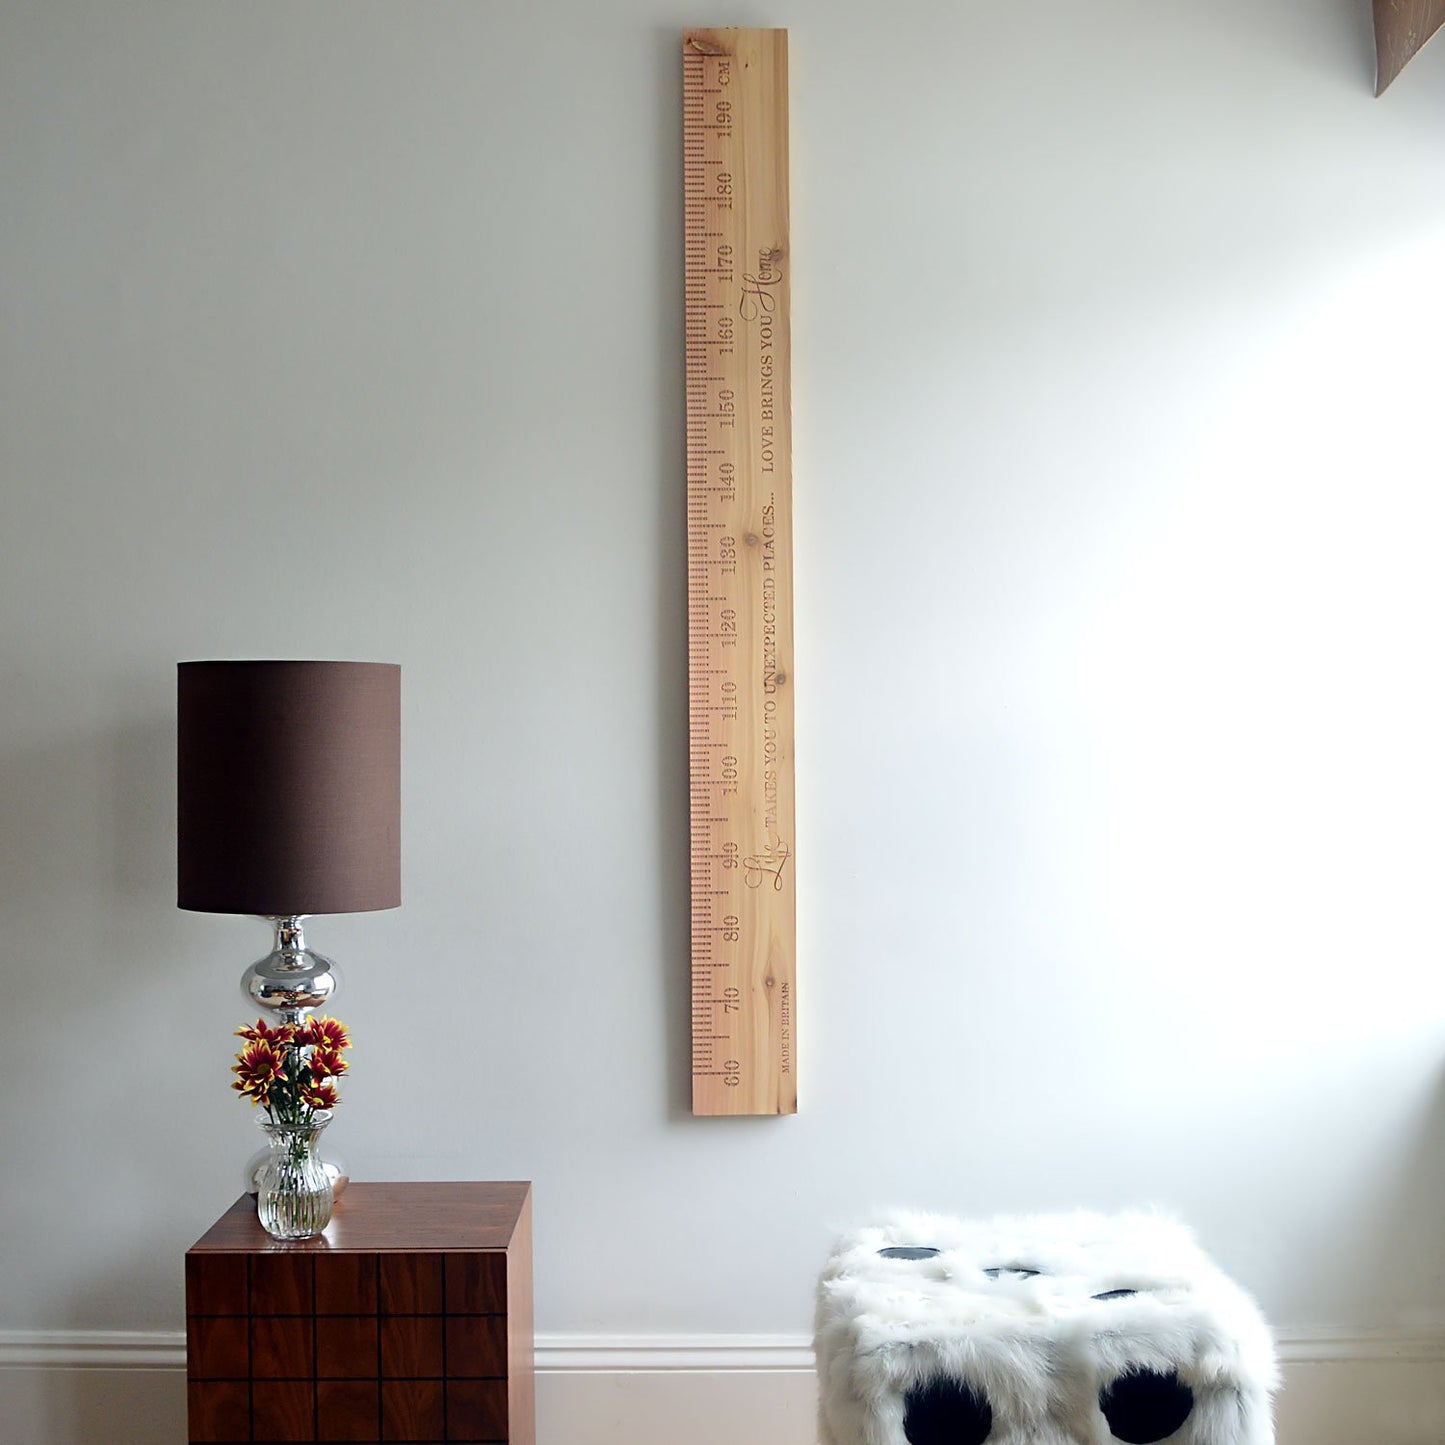 SlimJim PERSONALISED Wooden Ruler Height Chart Cedar - Wildash London